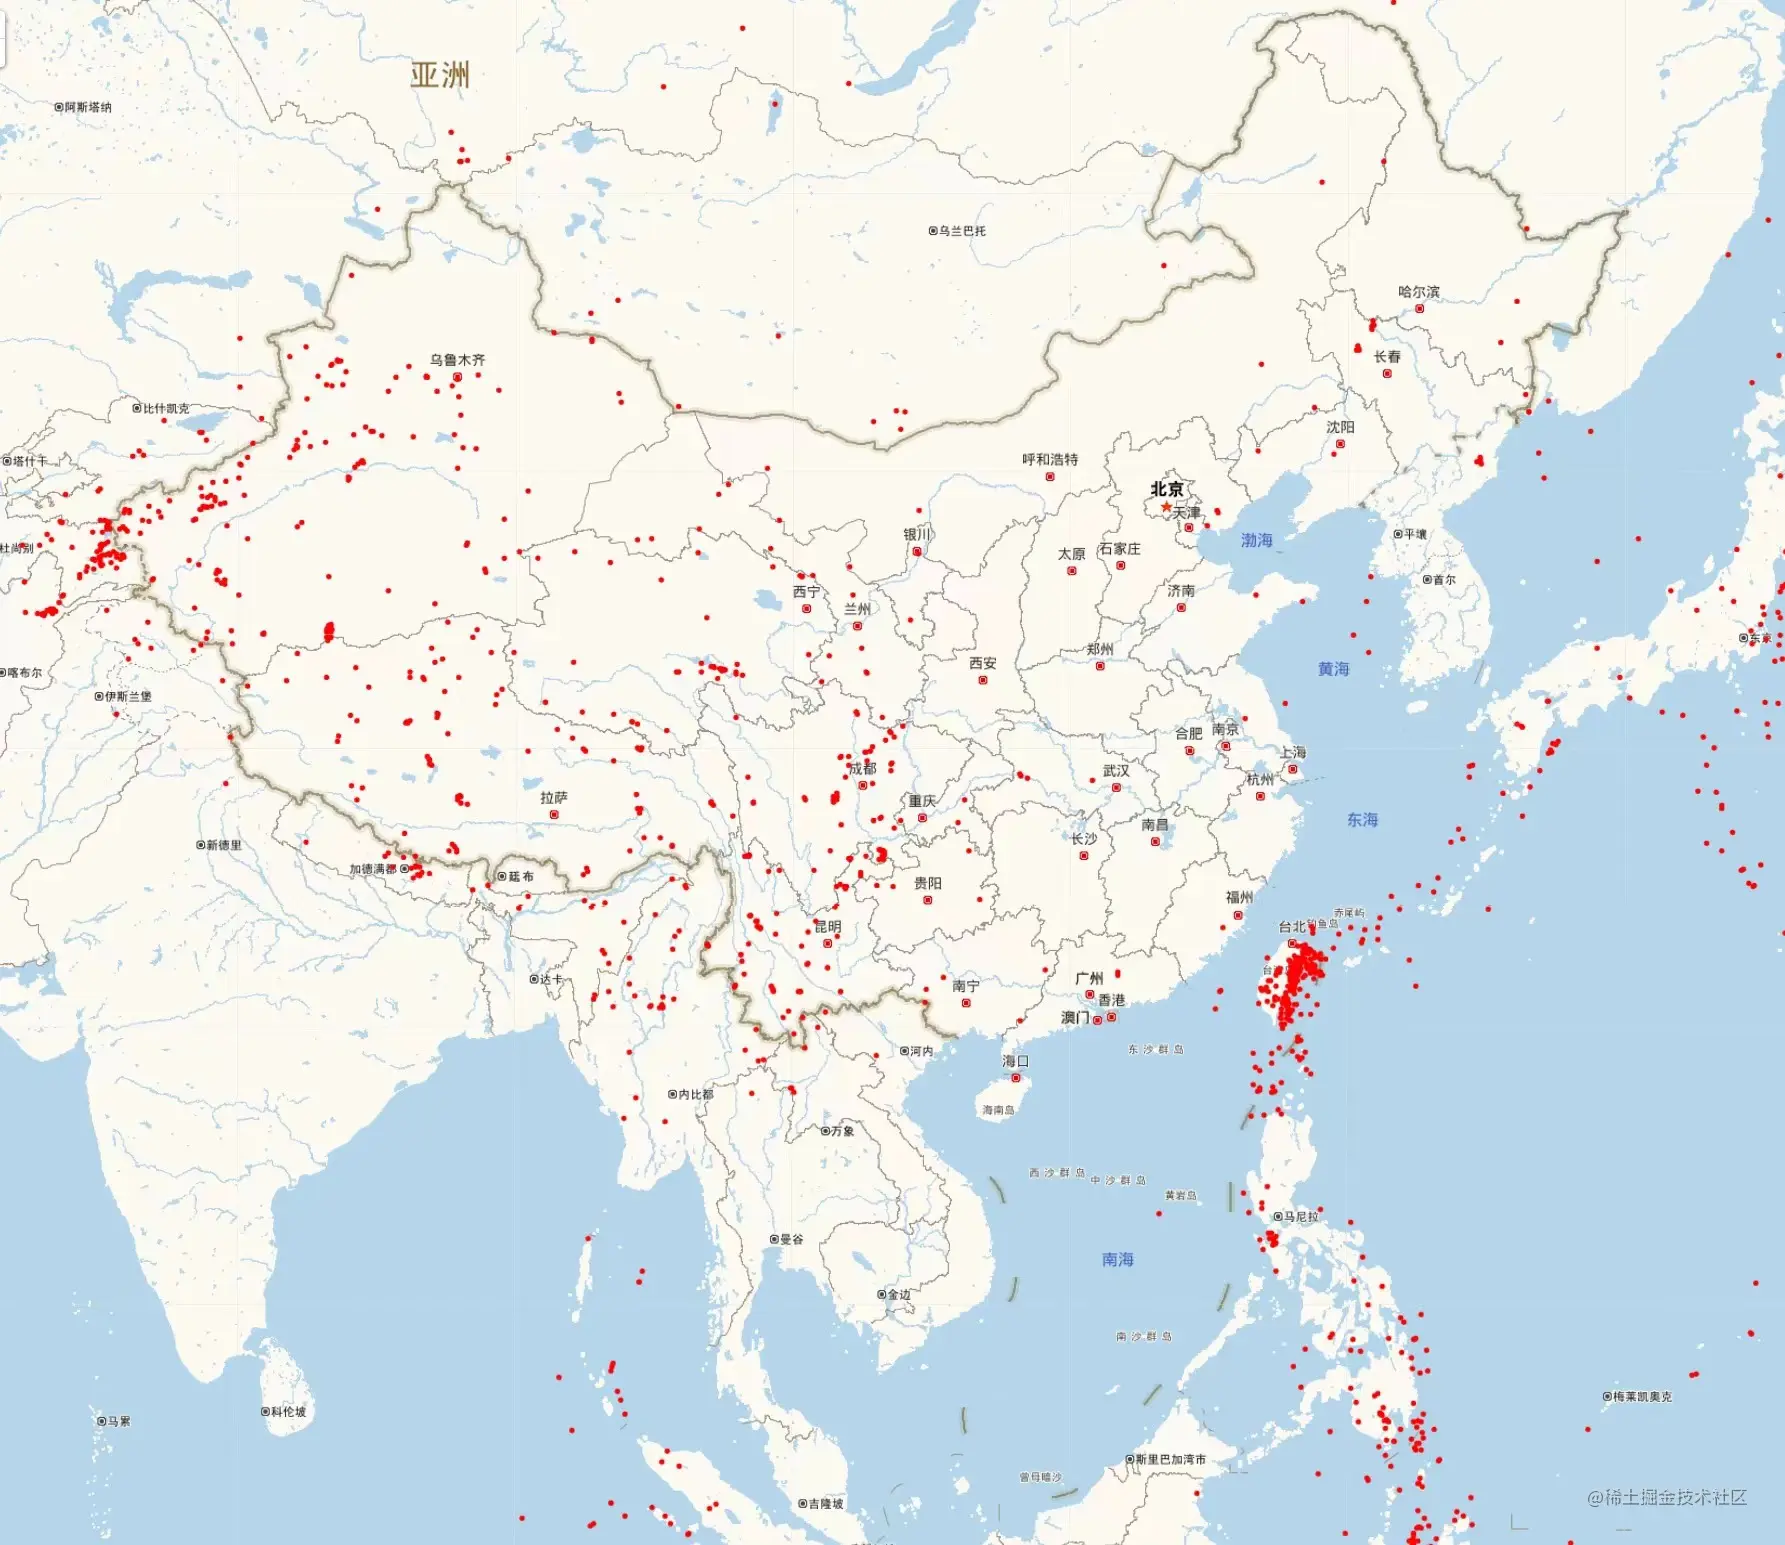  Earthquake distribution 